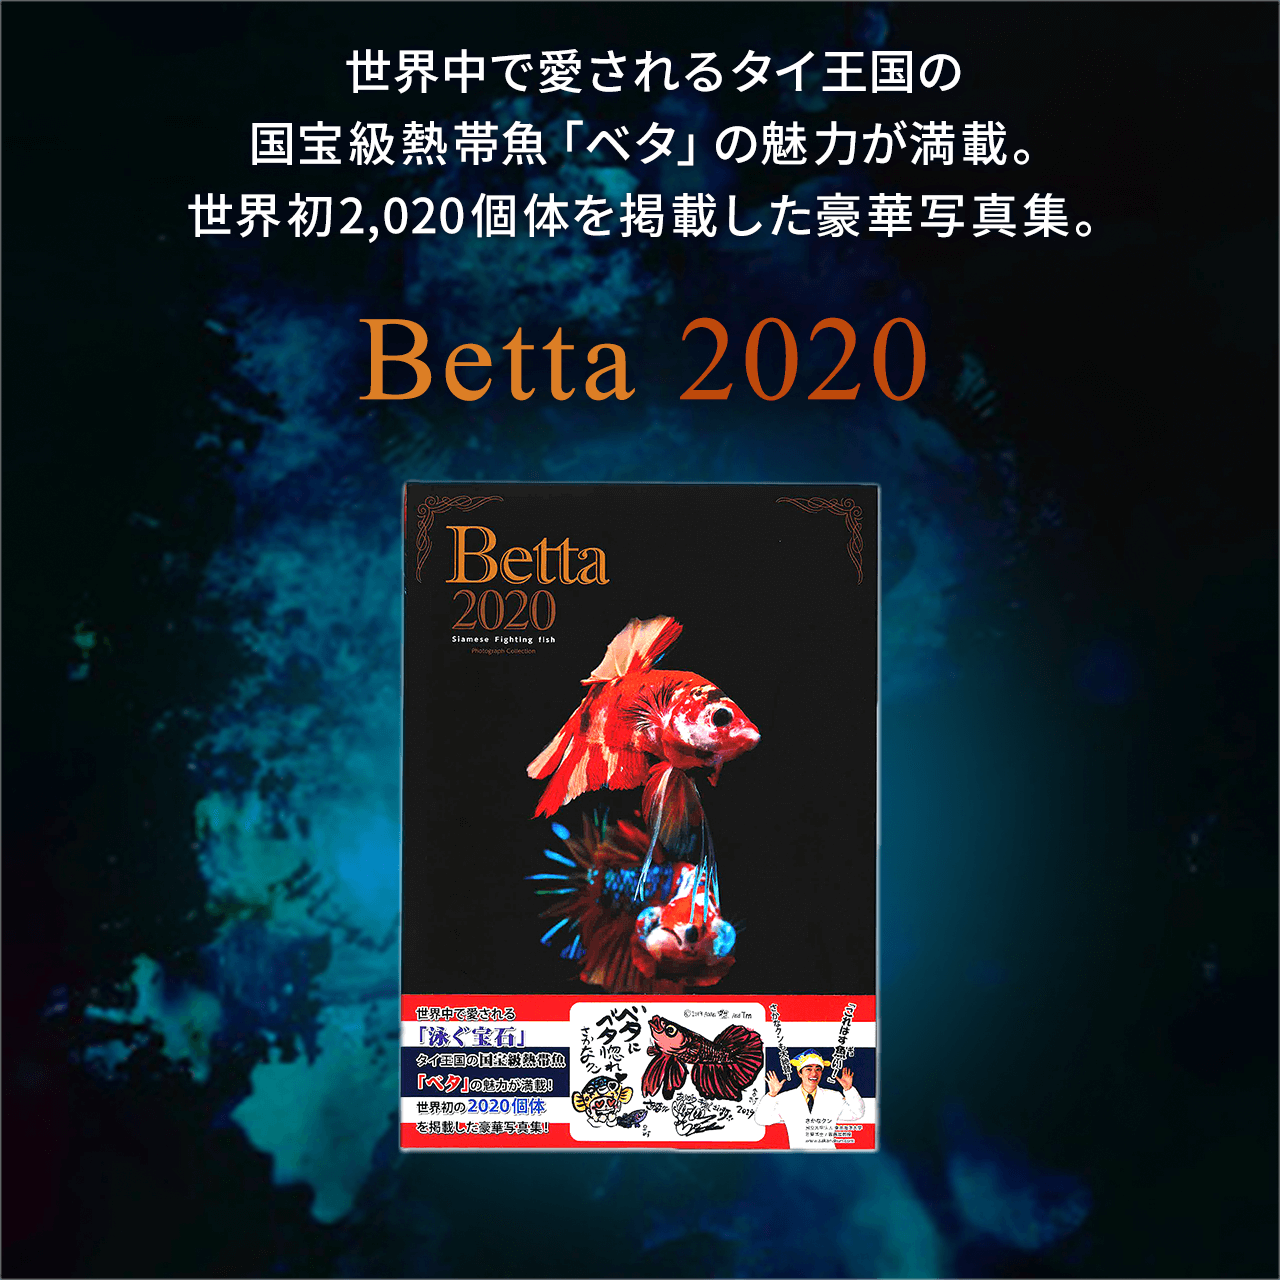 Eň^C̍󋉔Mыux^v̖͂ځBE2,020̂fڂ؎ʐ^WBBetta 2020